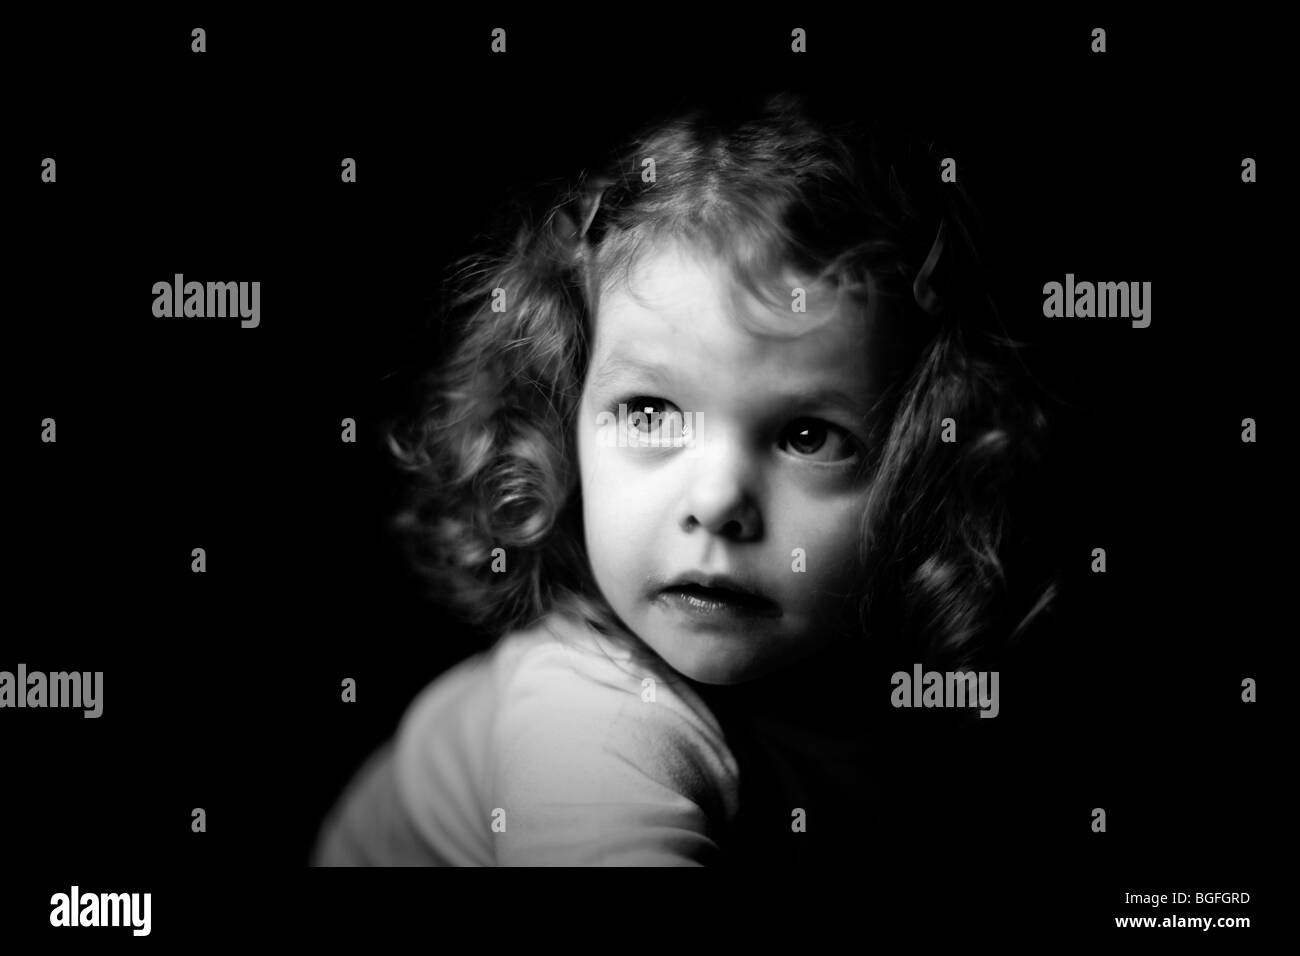 Foto in bianco e nero di una bambina di tre anni in illuminazione drammatica. Sfondo nero. Foto Stock